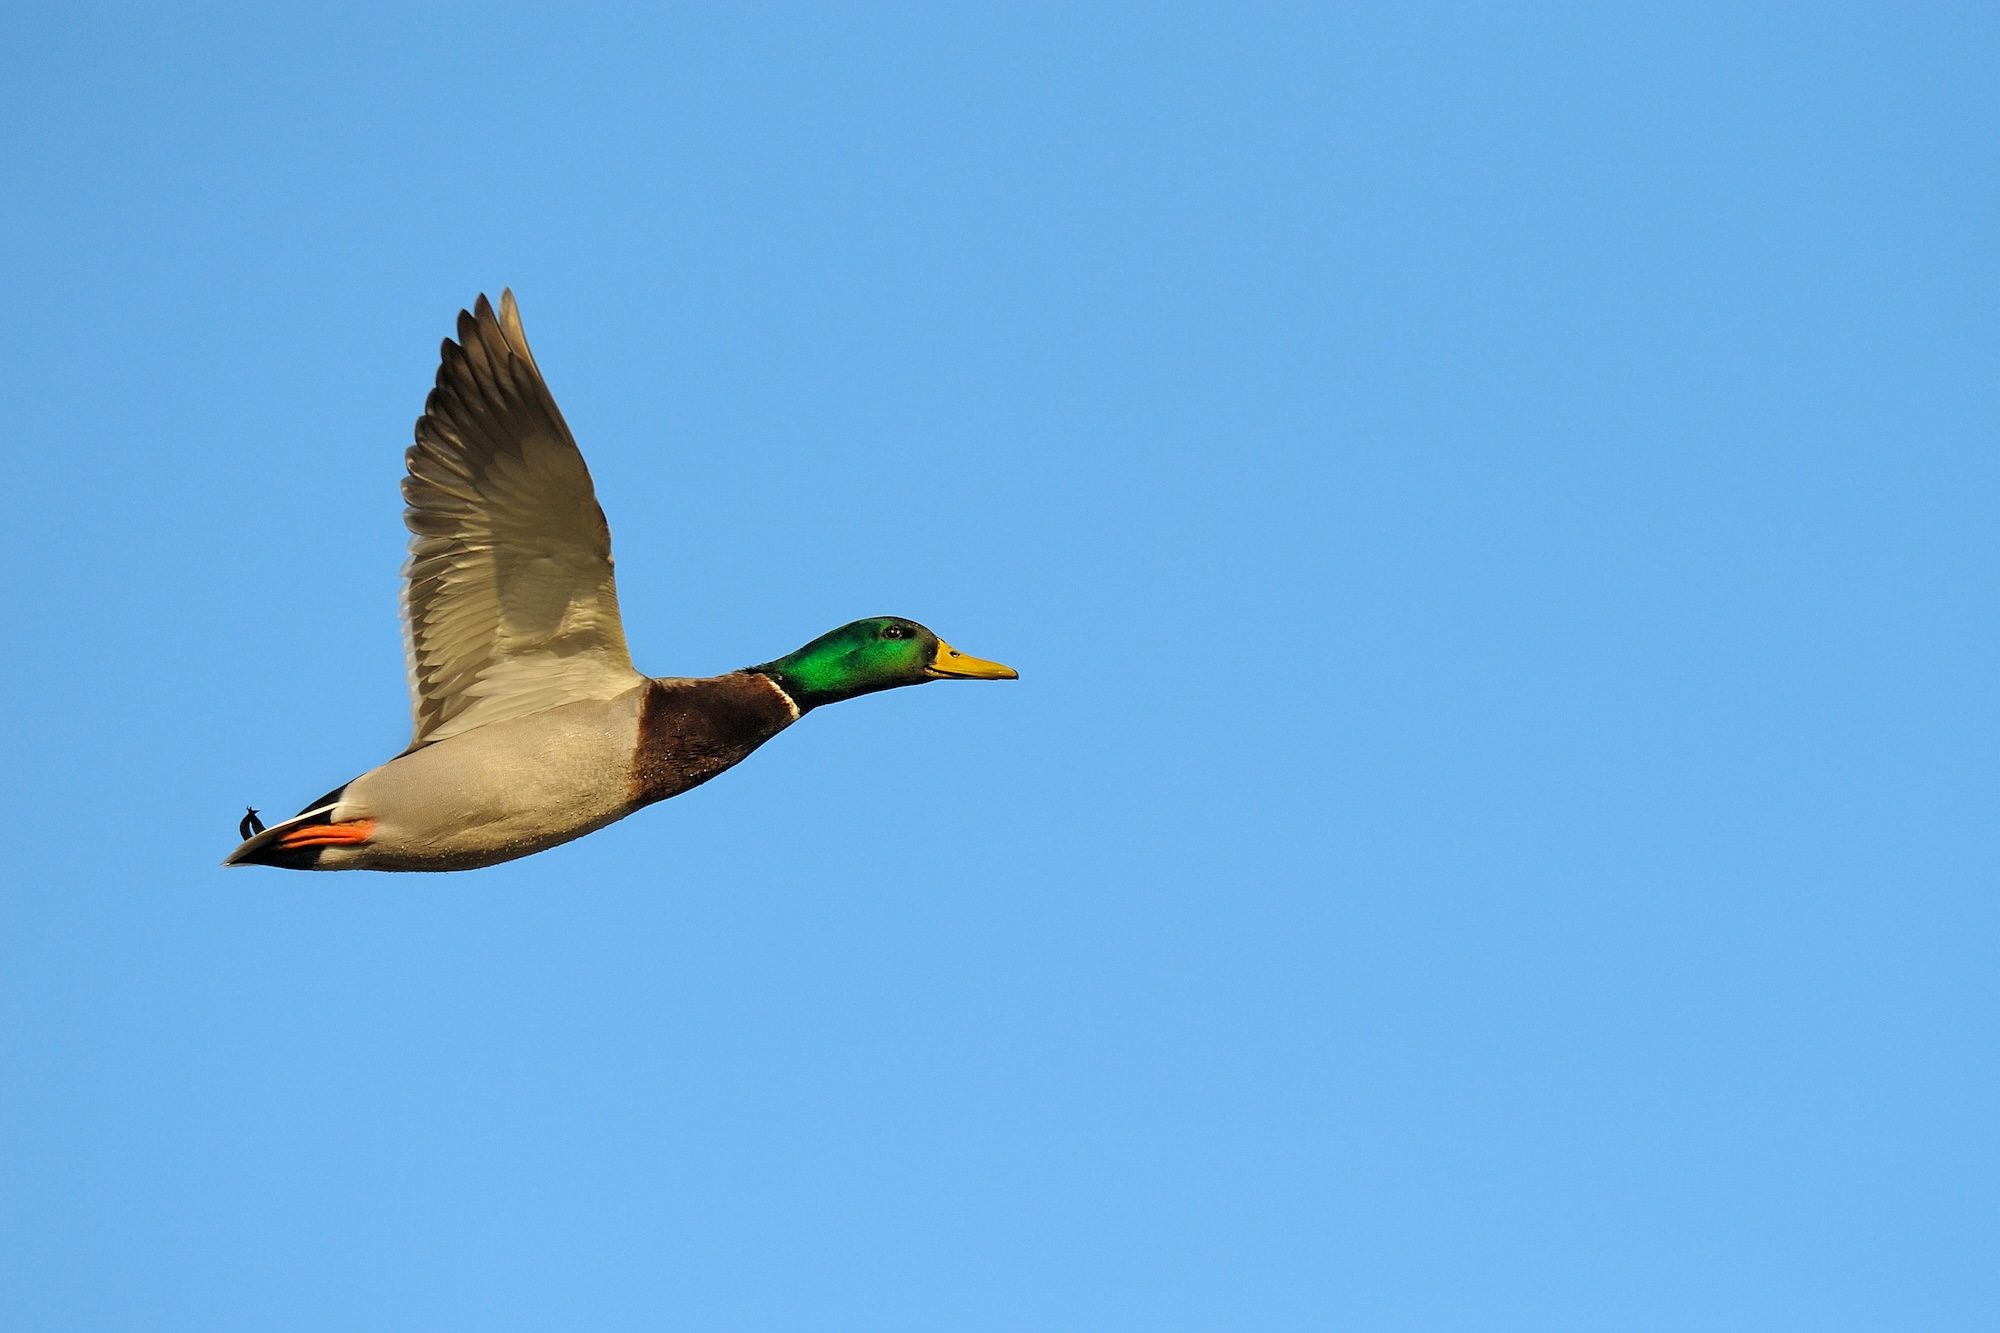 Male mallard duck in flight sets record speed.